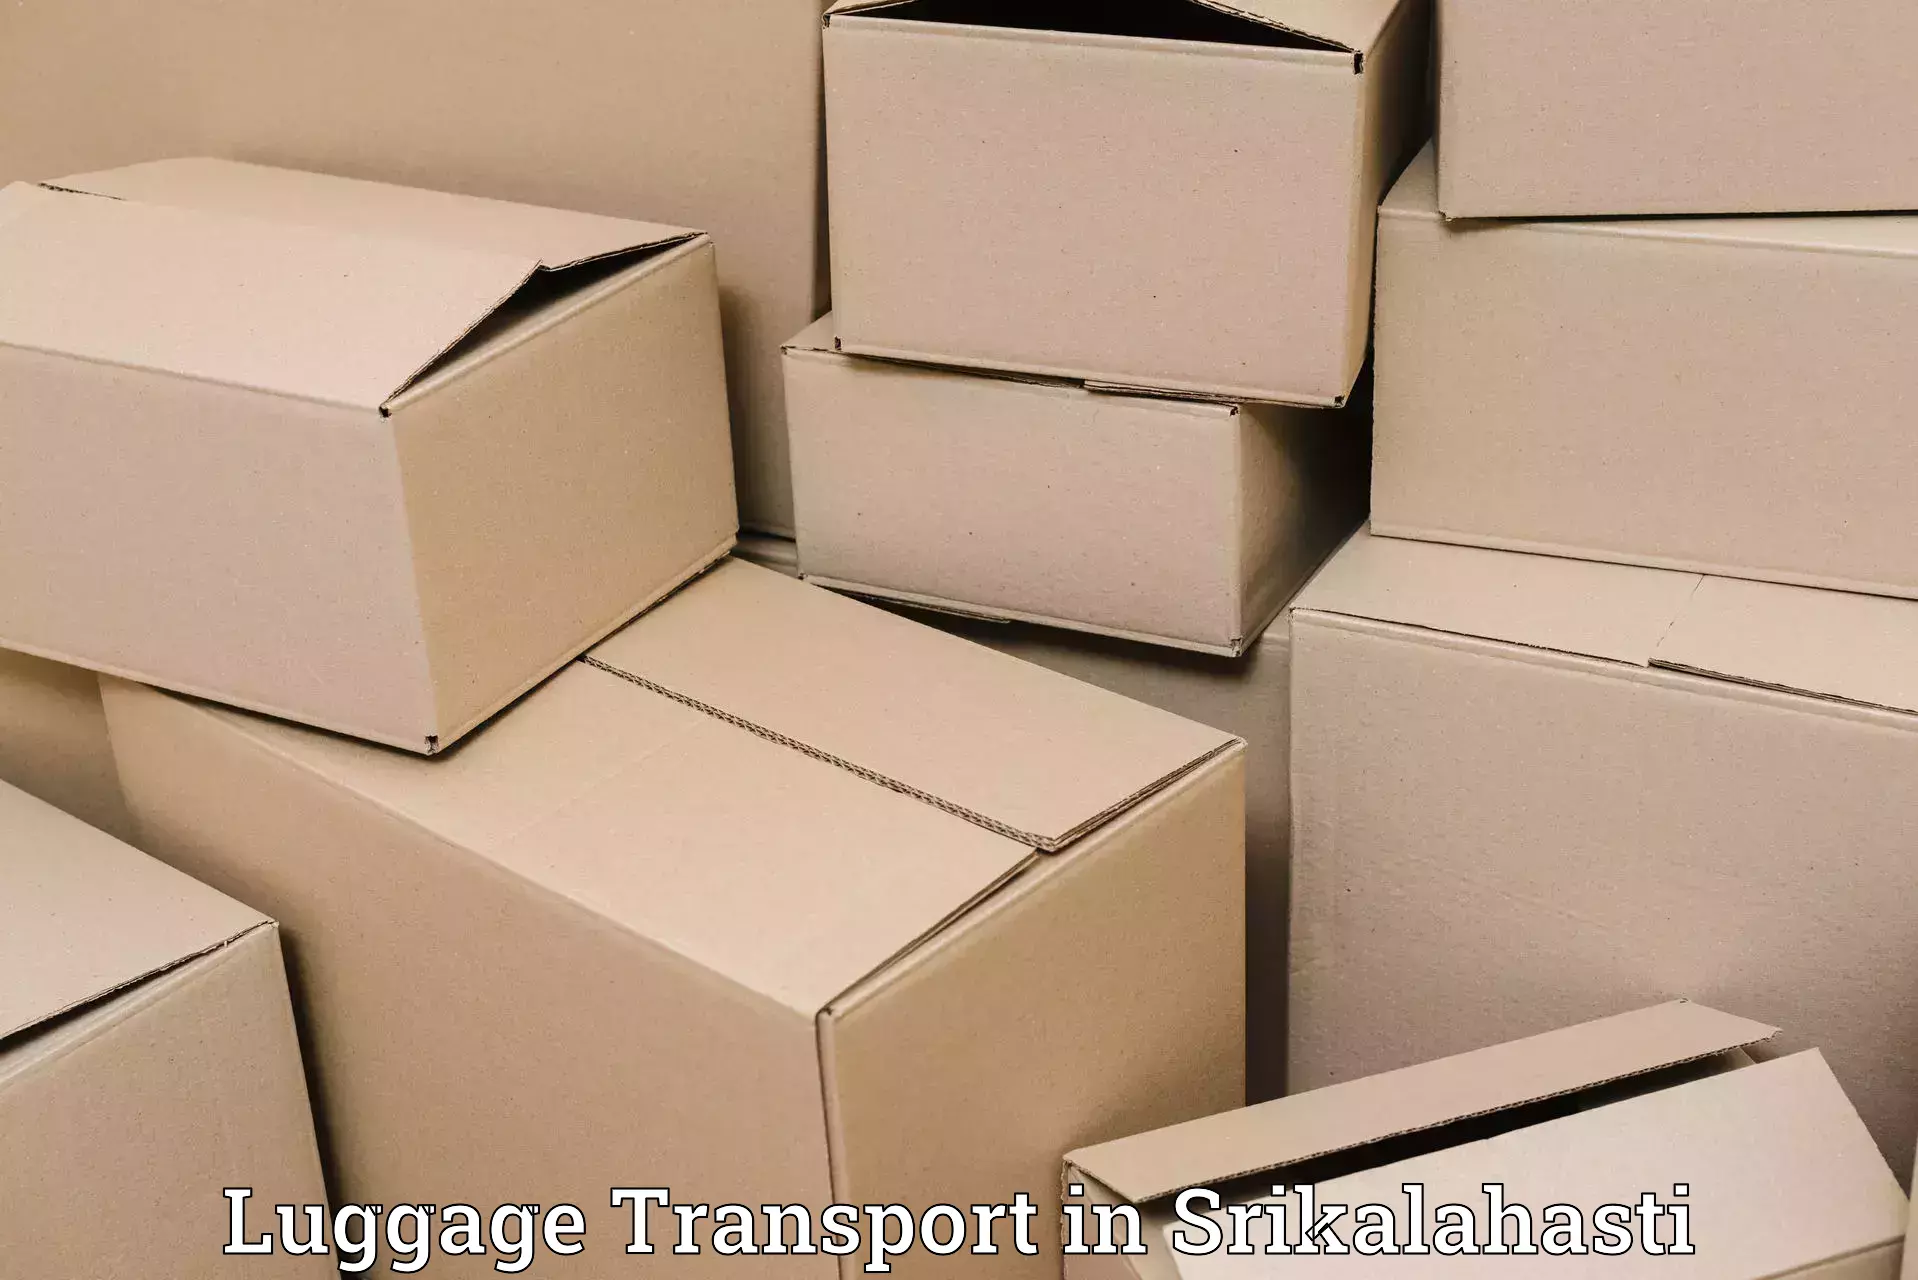 Luggage delivery optimization in Srikalahasti